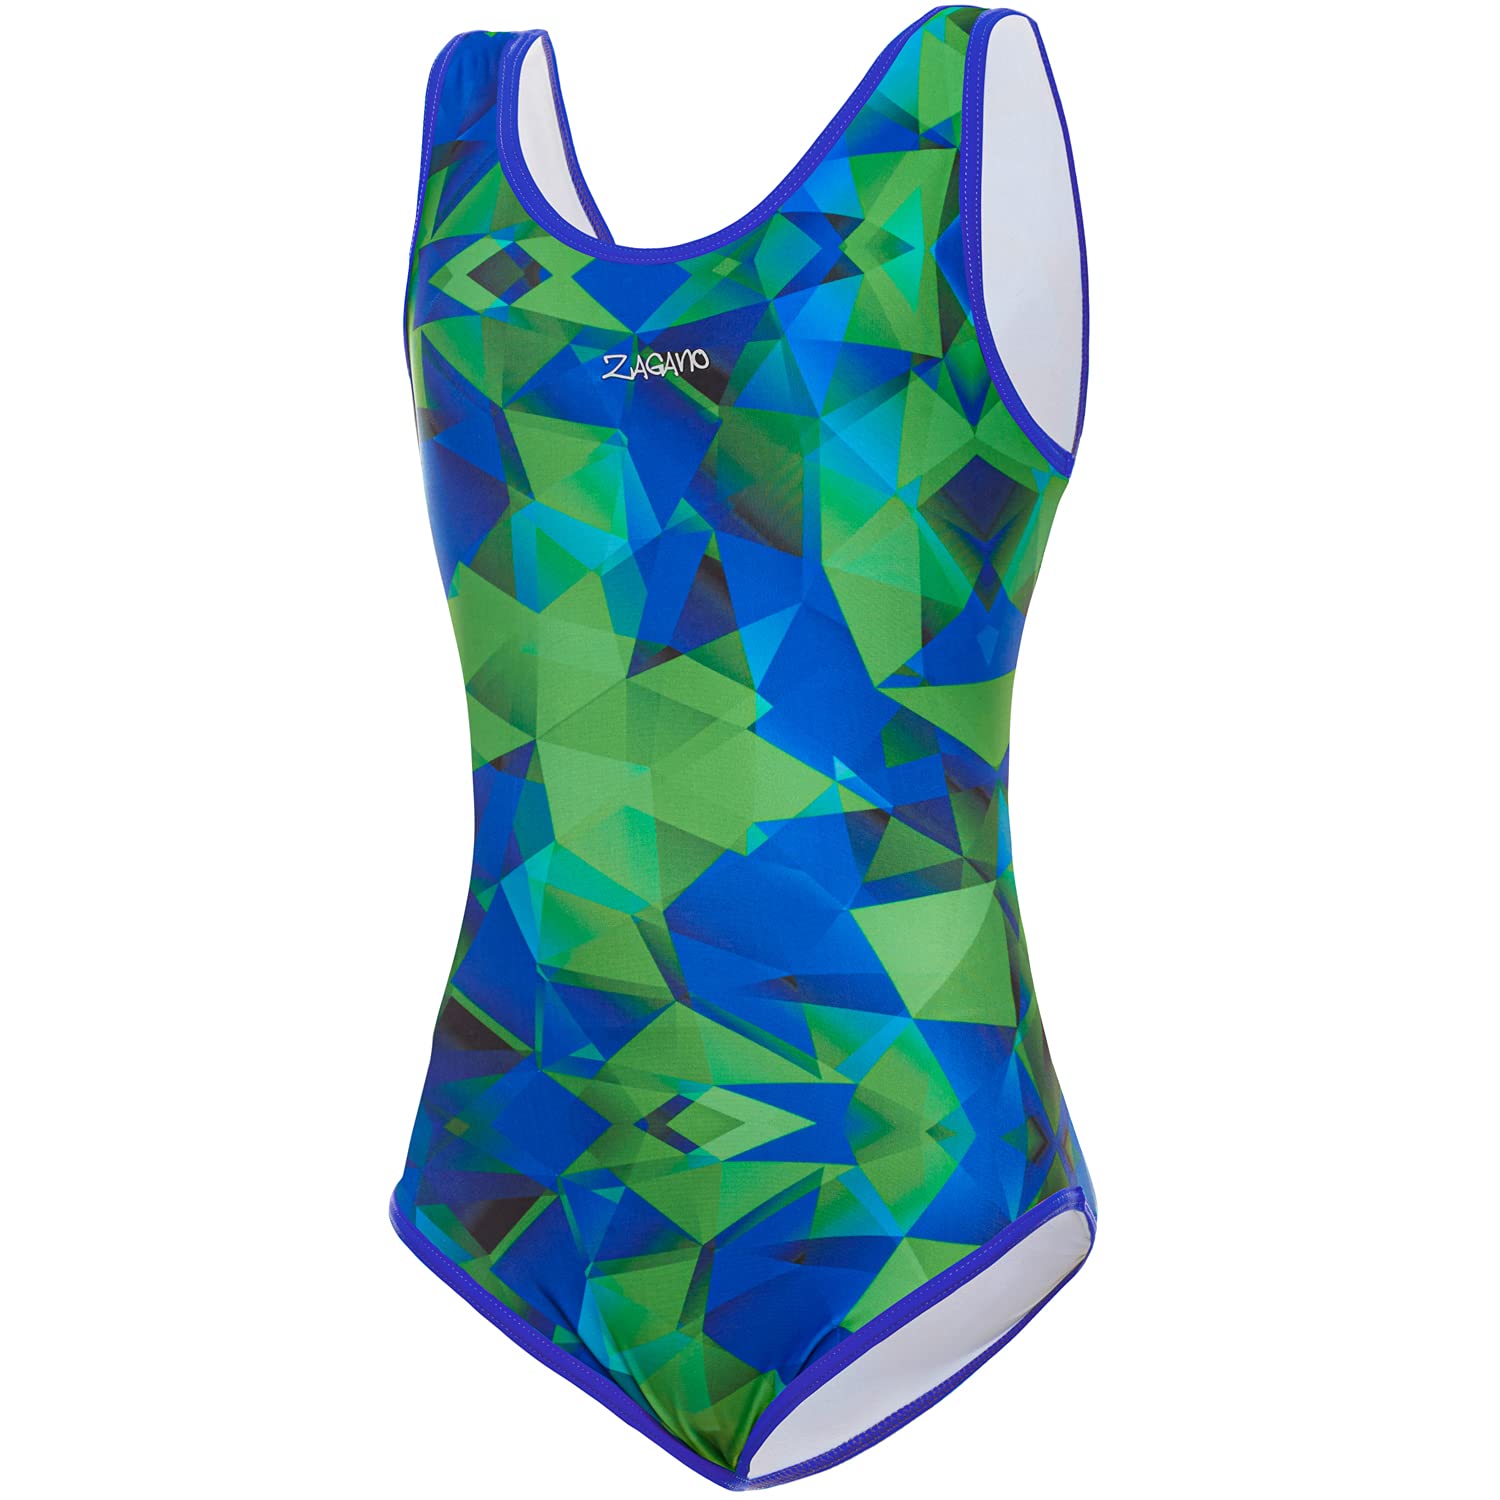 Zagano Badeanzug Mädchen 7003 - badeanzüge für Mädchen -swimsuite for Girls - Bademode für Mädchen, Badeanzug Kinder UV-beständig Schwimmanzug Kinder blau grün Gr. 122